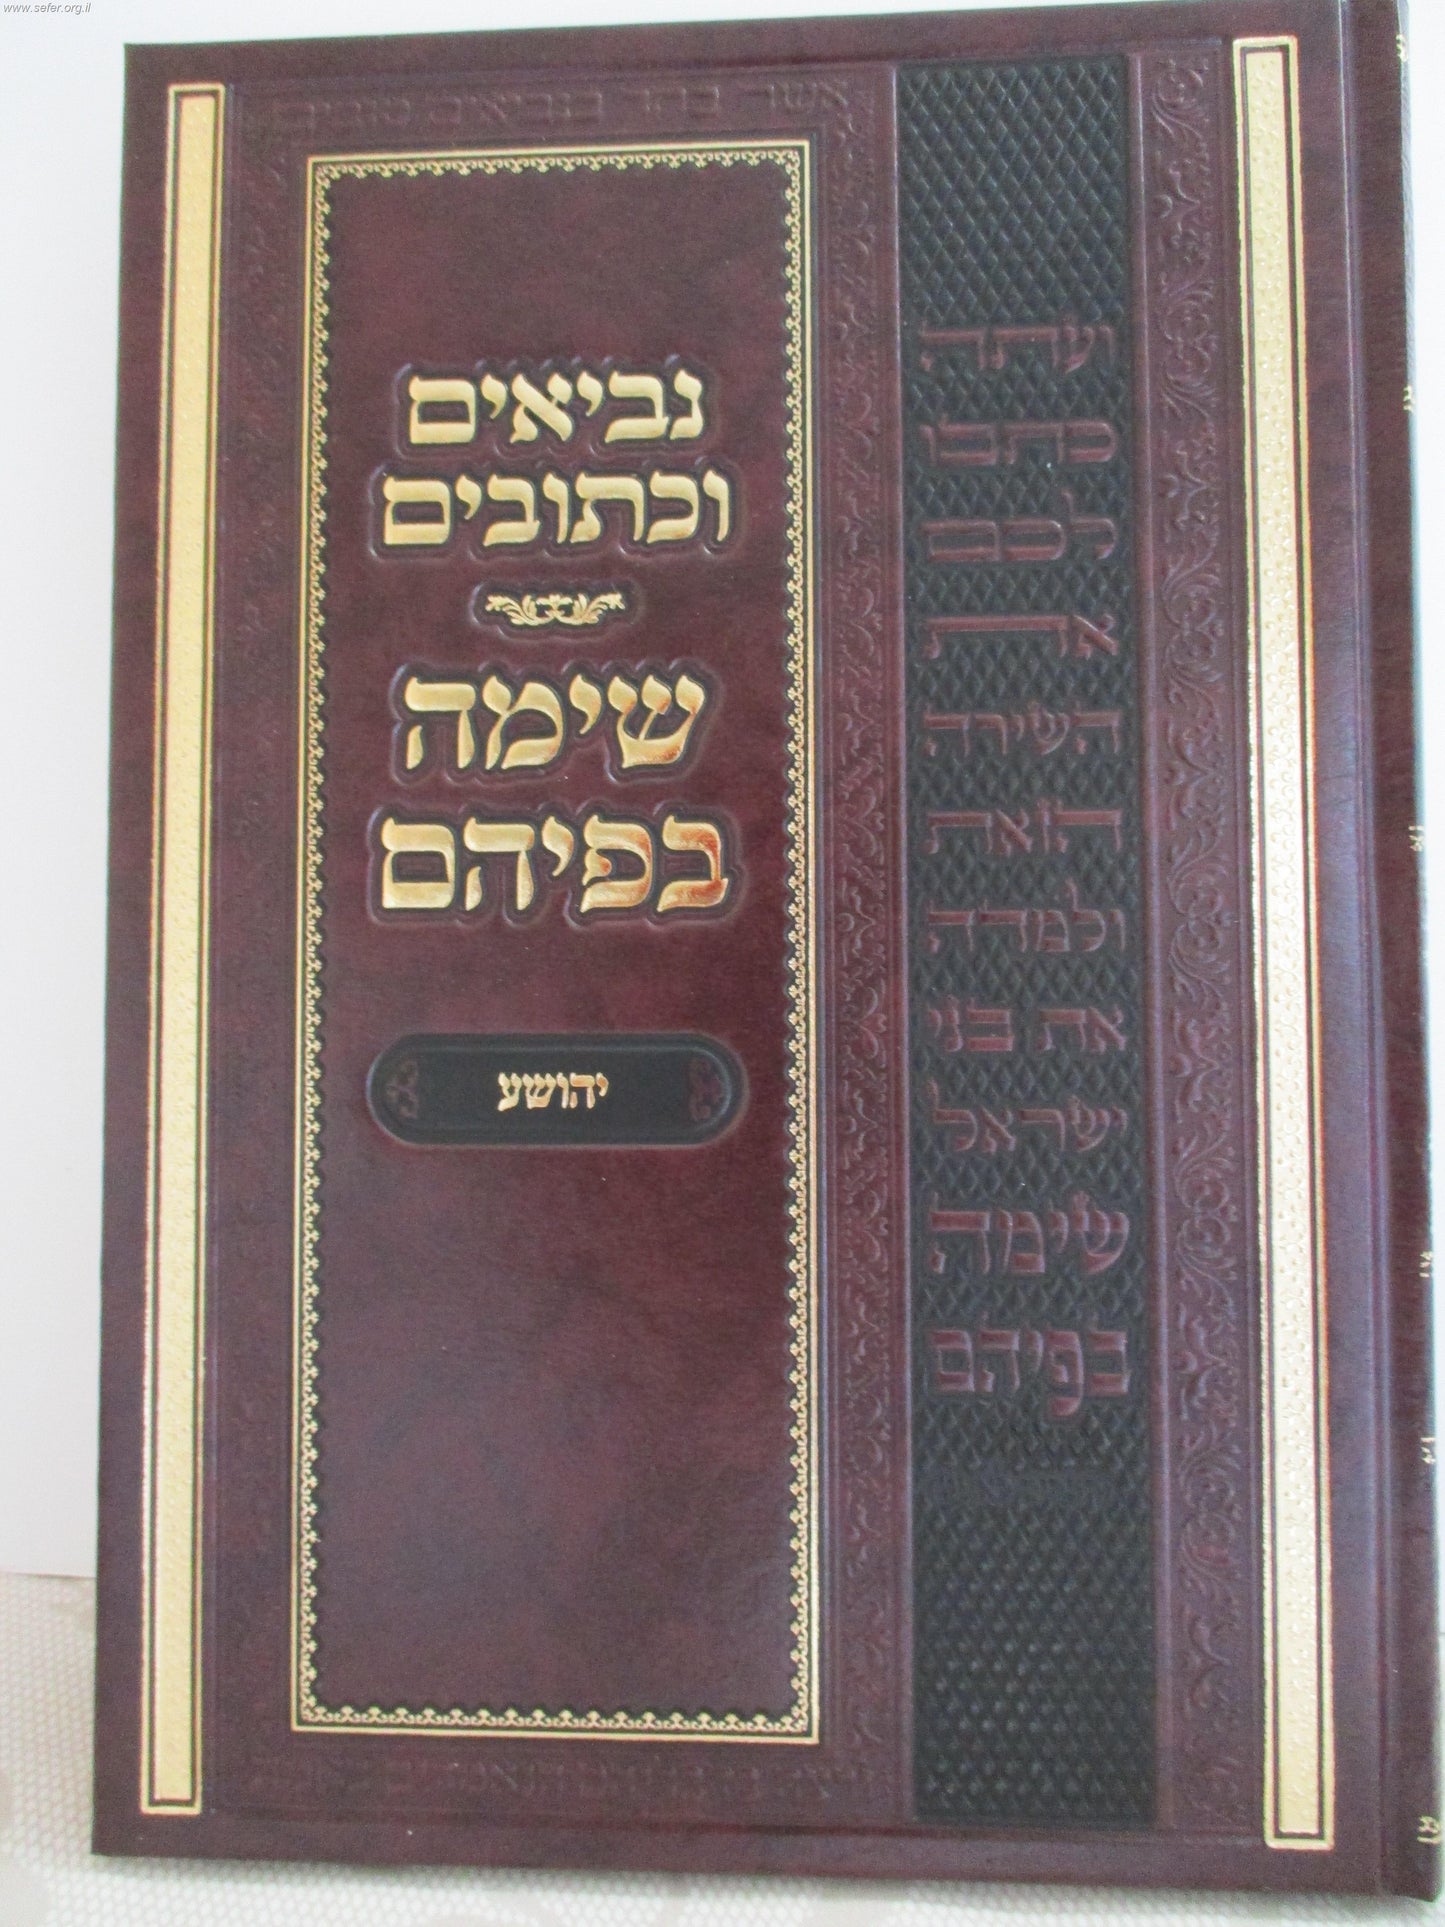 Sima Befiem - Yehushua - נביאים וכתובים - שימה בפיהם יהושע